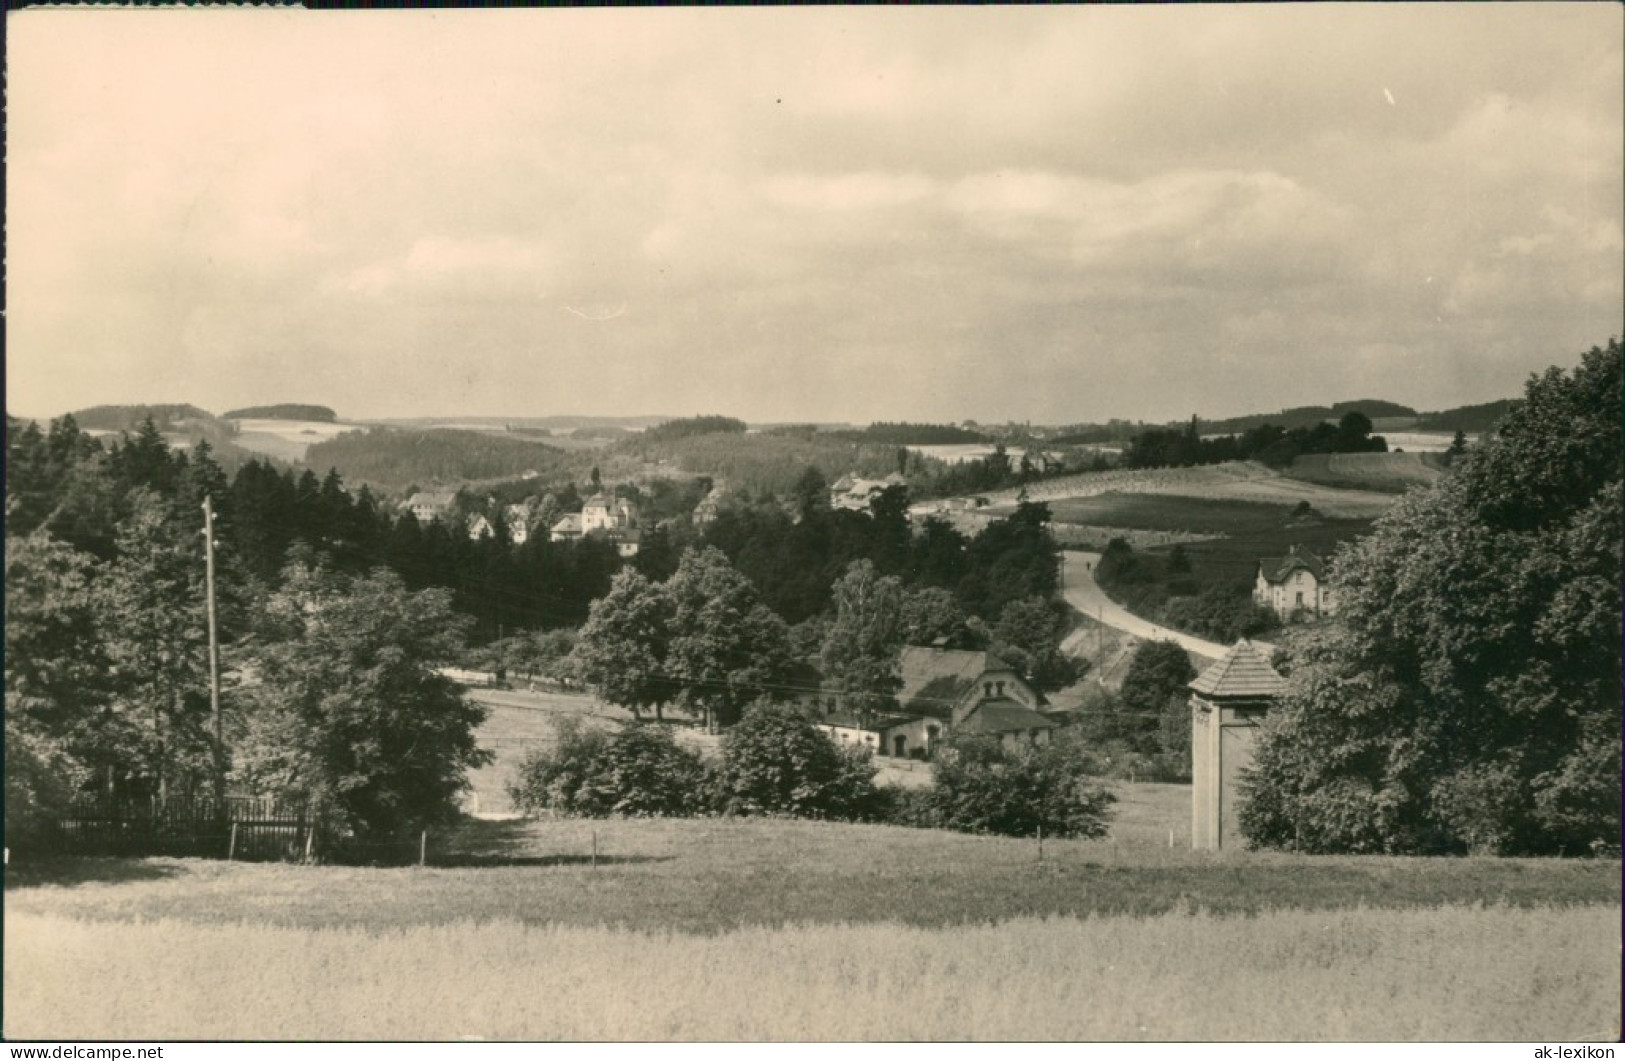 Ansichtskarte Jocketa-Pöhl Panorama über Felder 1964 - Pöhl